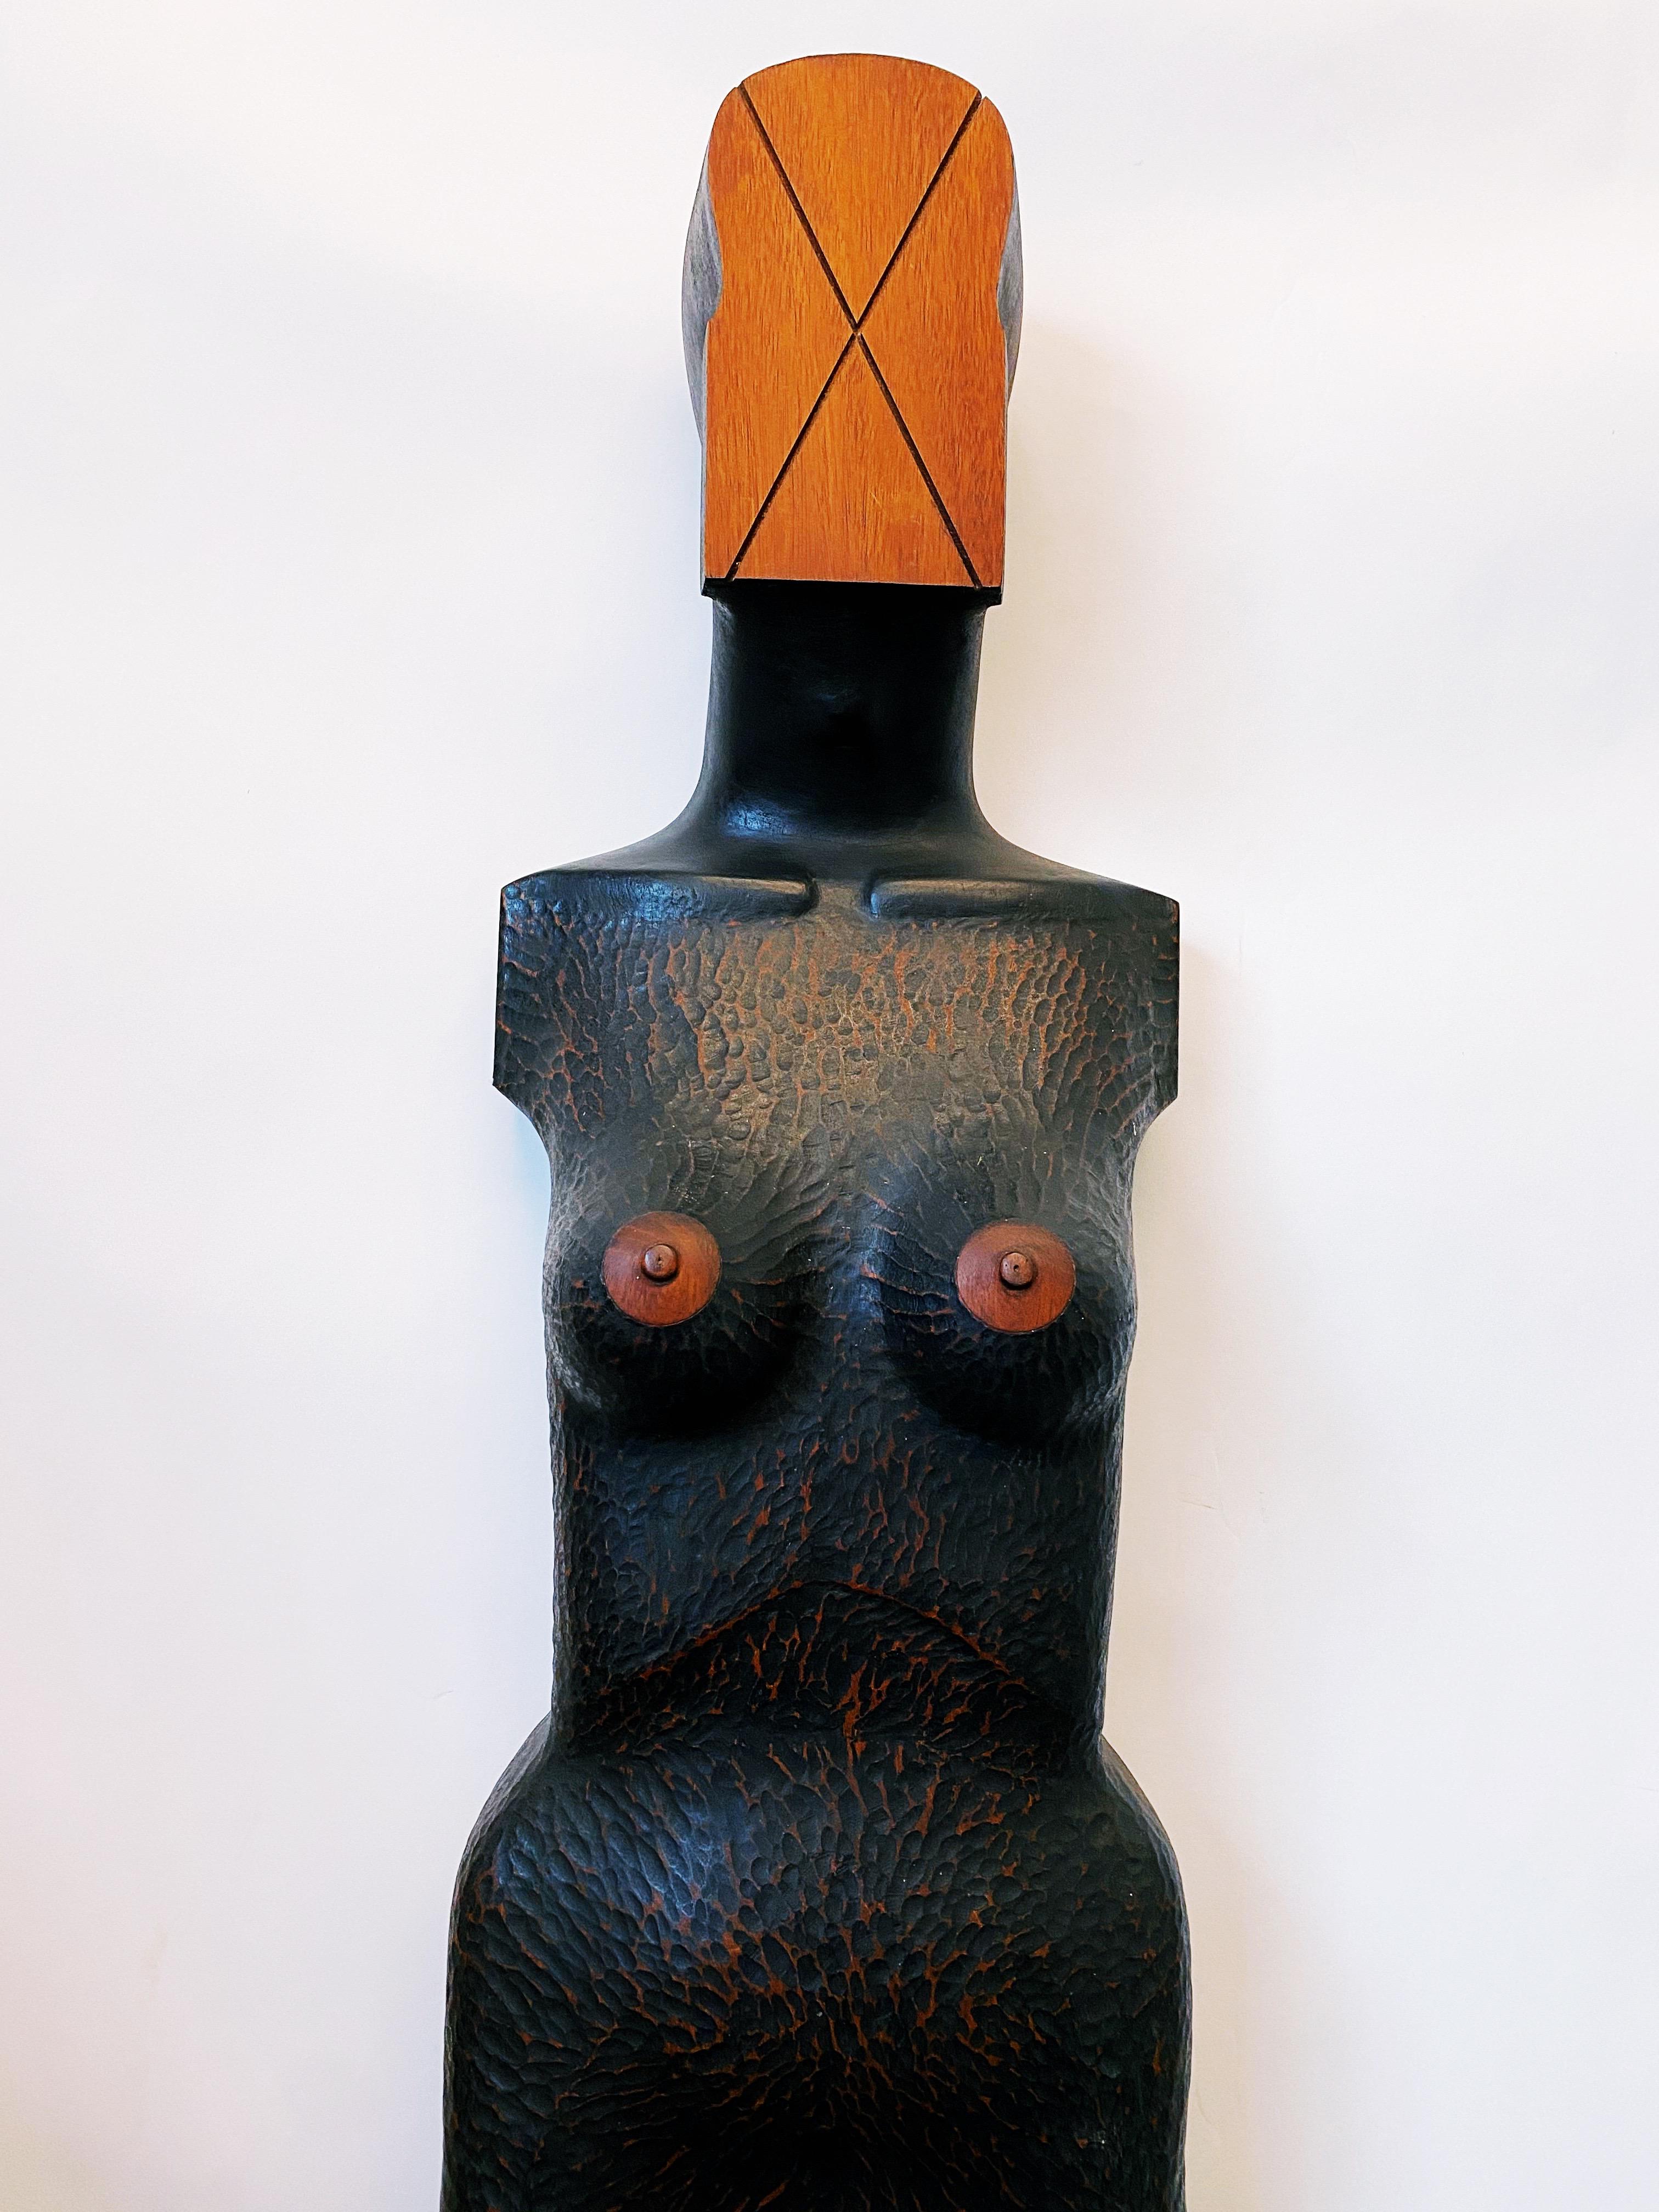 Cette sculpture figurative sculptée à la main est en bon état général. Texture ciselée à la main. Acajou. Réalisé par l'artiste local Jim Pruitt, un artiste bien connu de San Antonio, décédé en 2011.
Les années 80, USA.
Dimensions : 13 x 8 x 69,5.